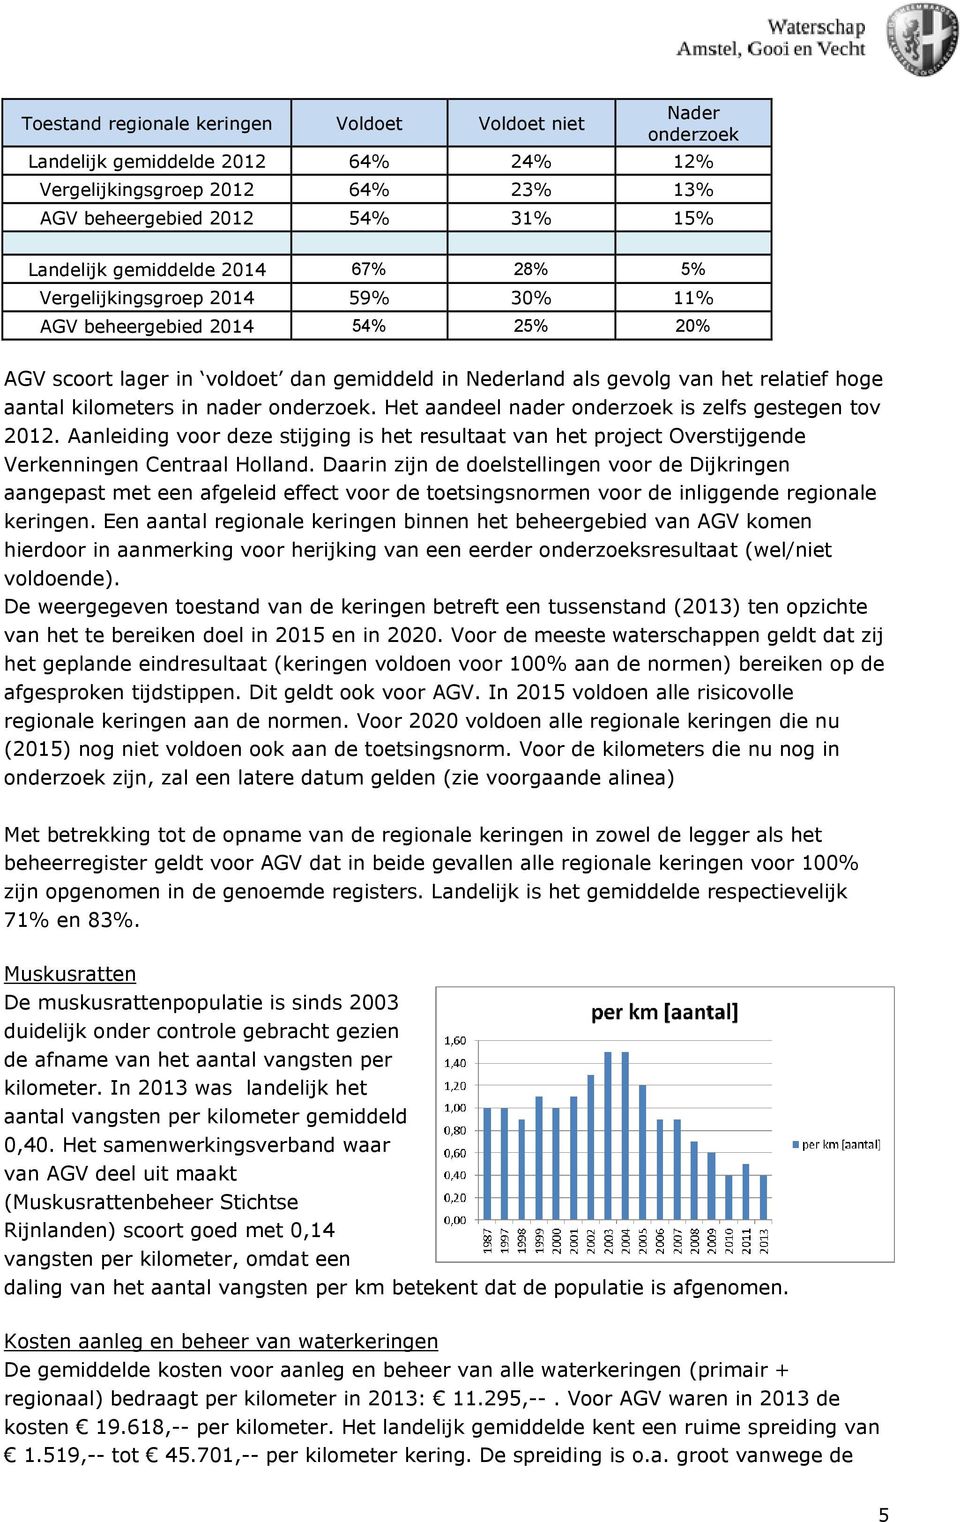 onderzoek. Het aandeel nader onderzoek is zelfs gestegen tov 2012. Aanleiding voor deze stijging is het resultaat van het project Overstijgende Verkenningen Centraal Holland.